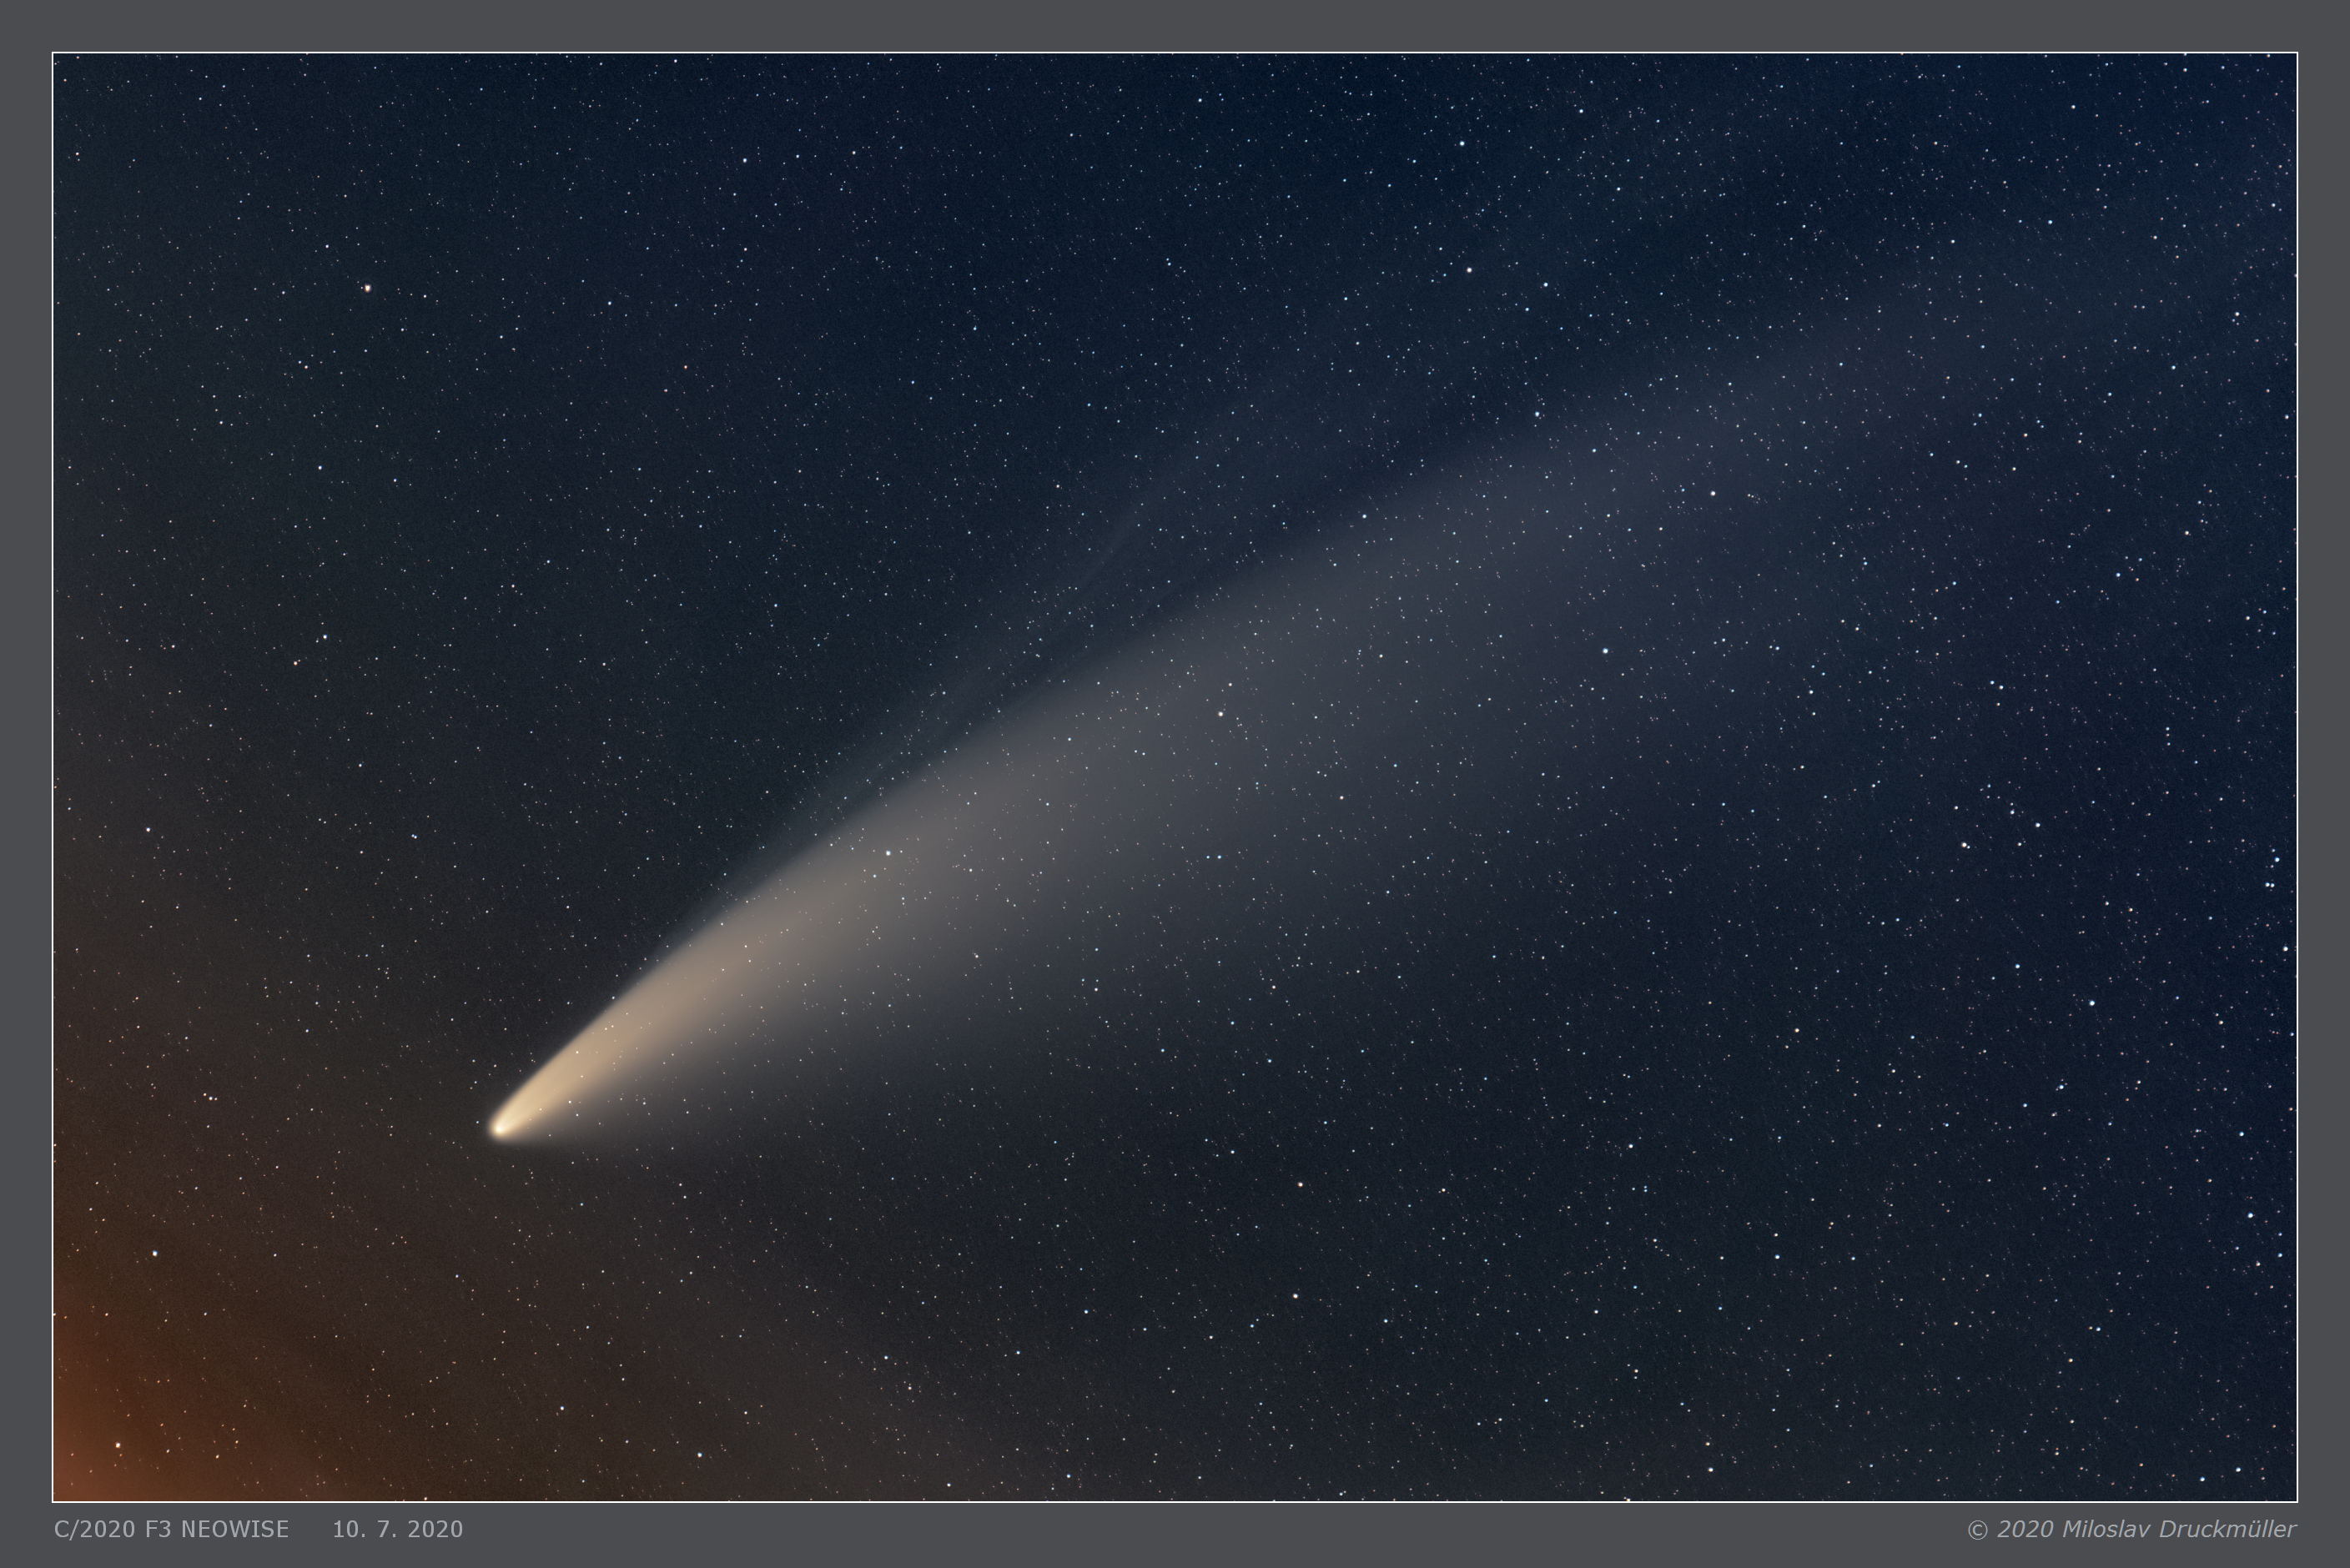 C2020_F3_NEOWISE_2020_07_10_druckmuller.jpg